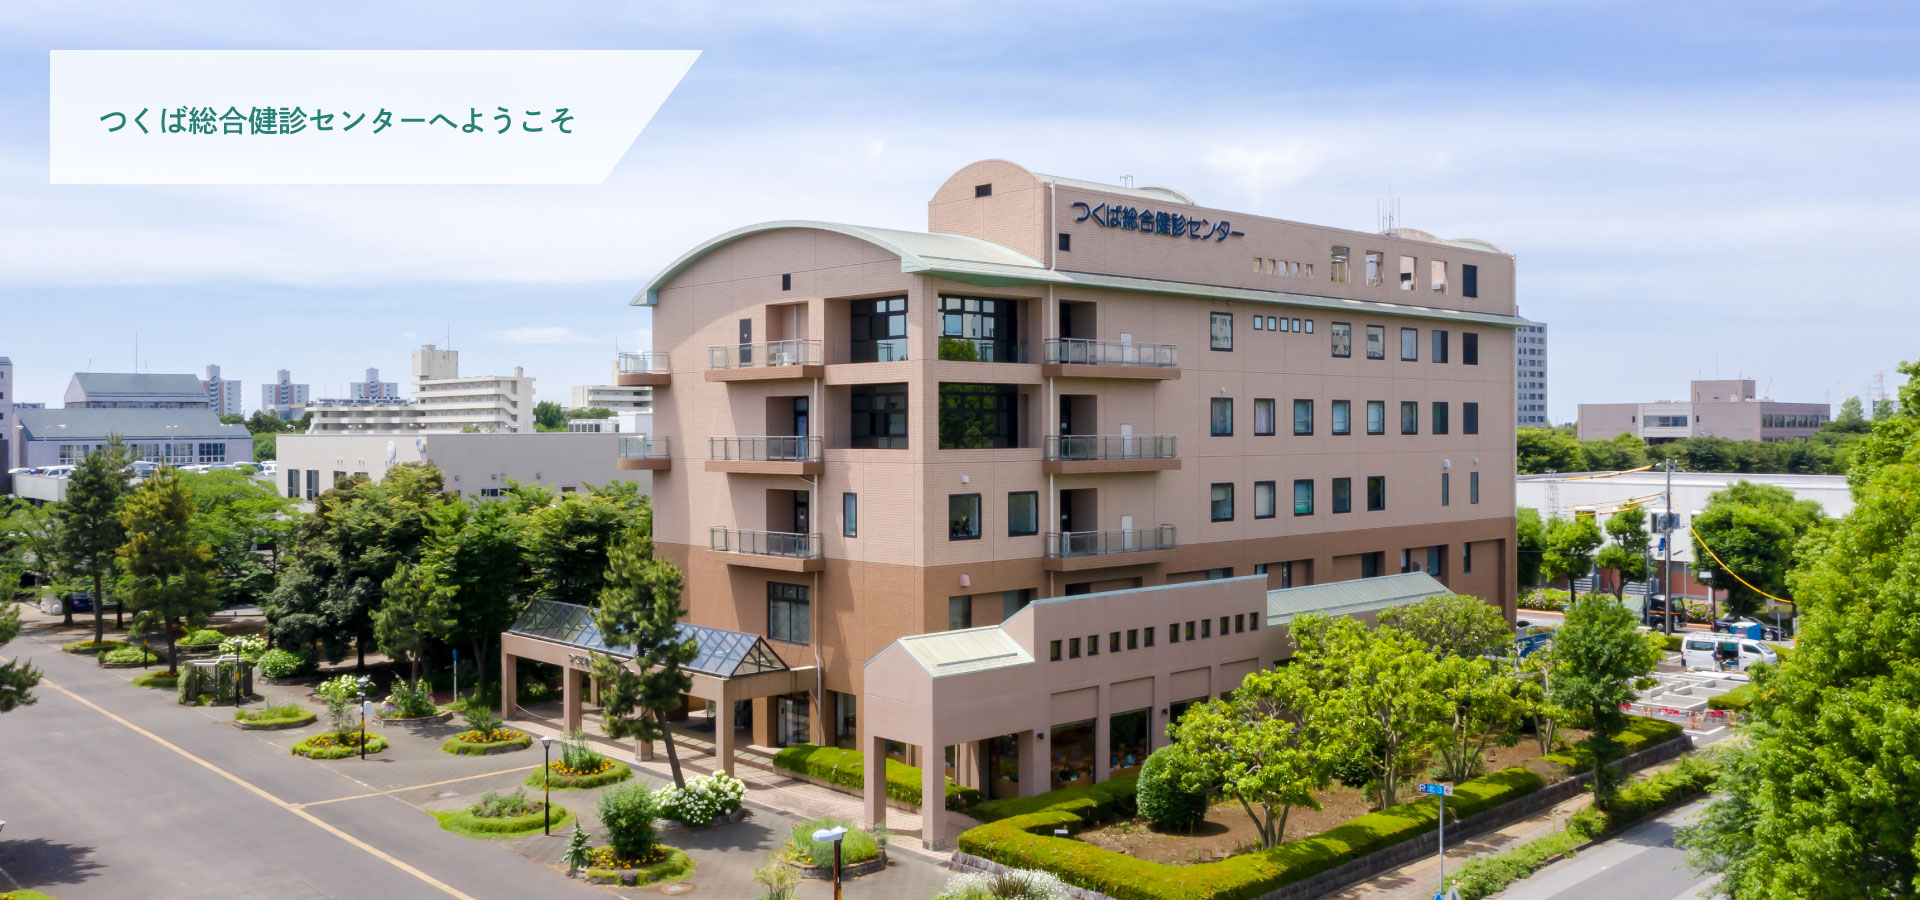 Bienvenido al Centro de Chequeo de Salud General de Tsukuba Nuestro objetivo es una gestión integral de la salud Brindar chequeos de salud de mayor calidad Contribuir a la difusión y el desarrollo de la medicina preventiva